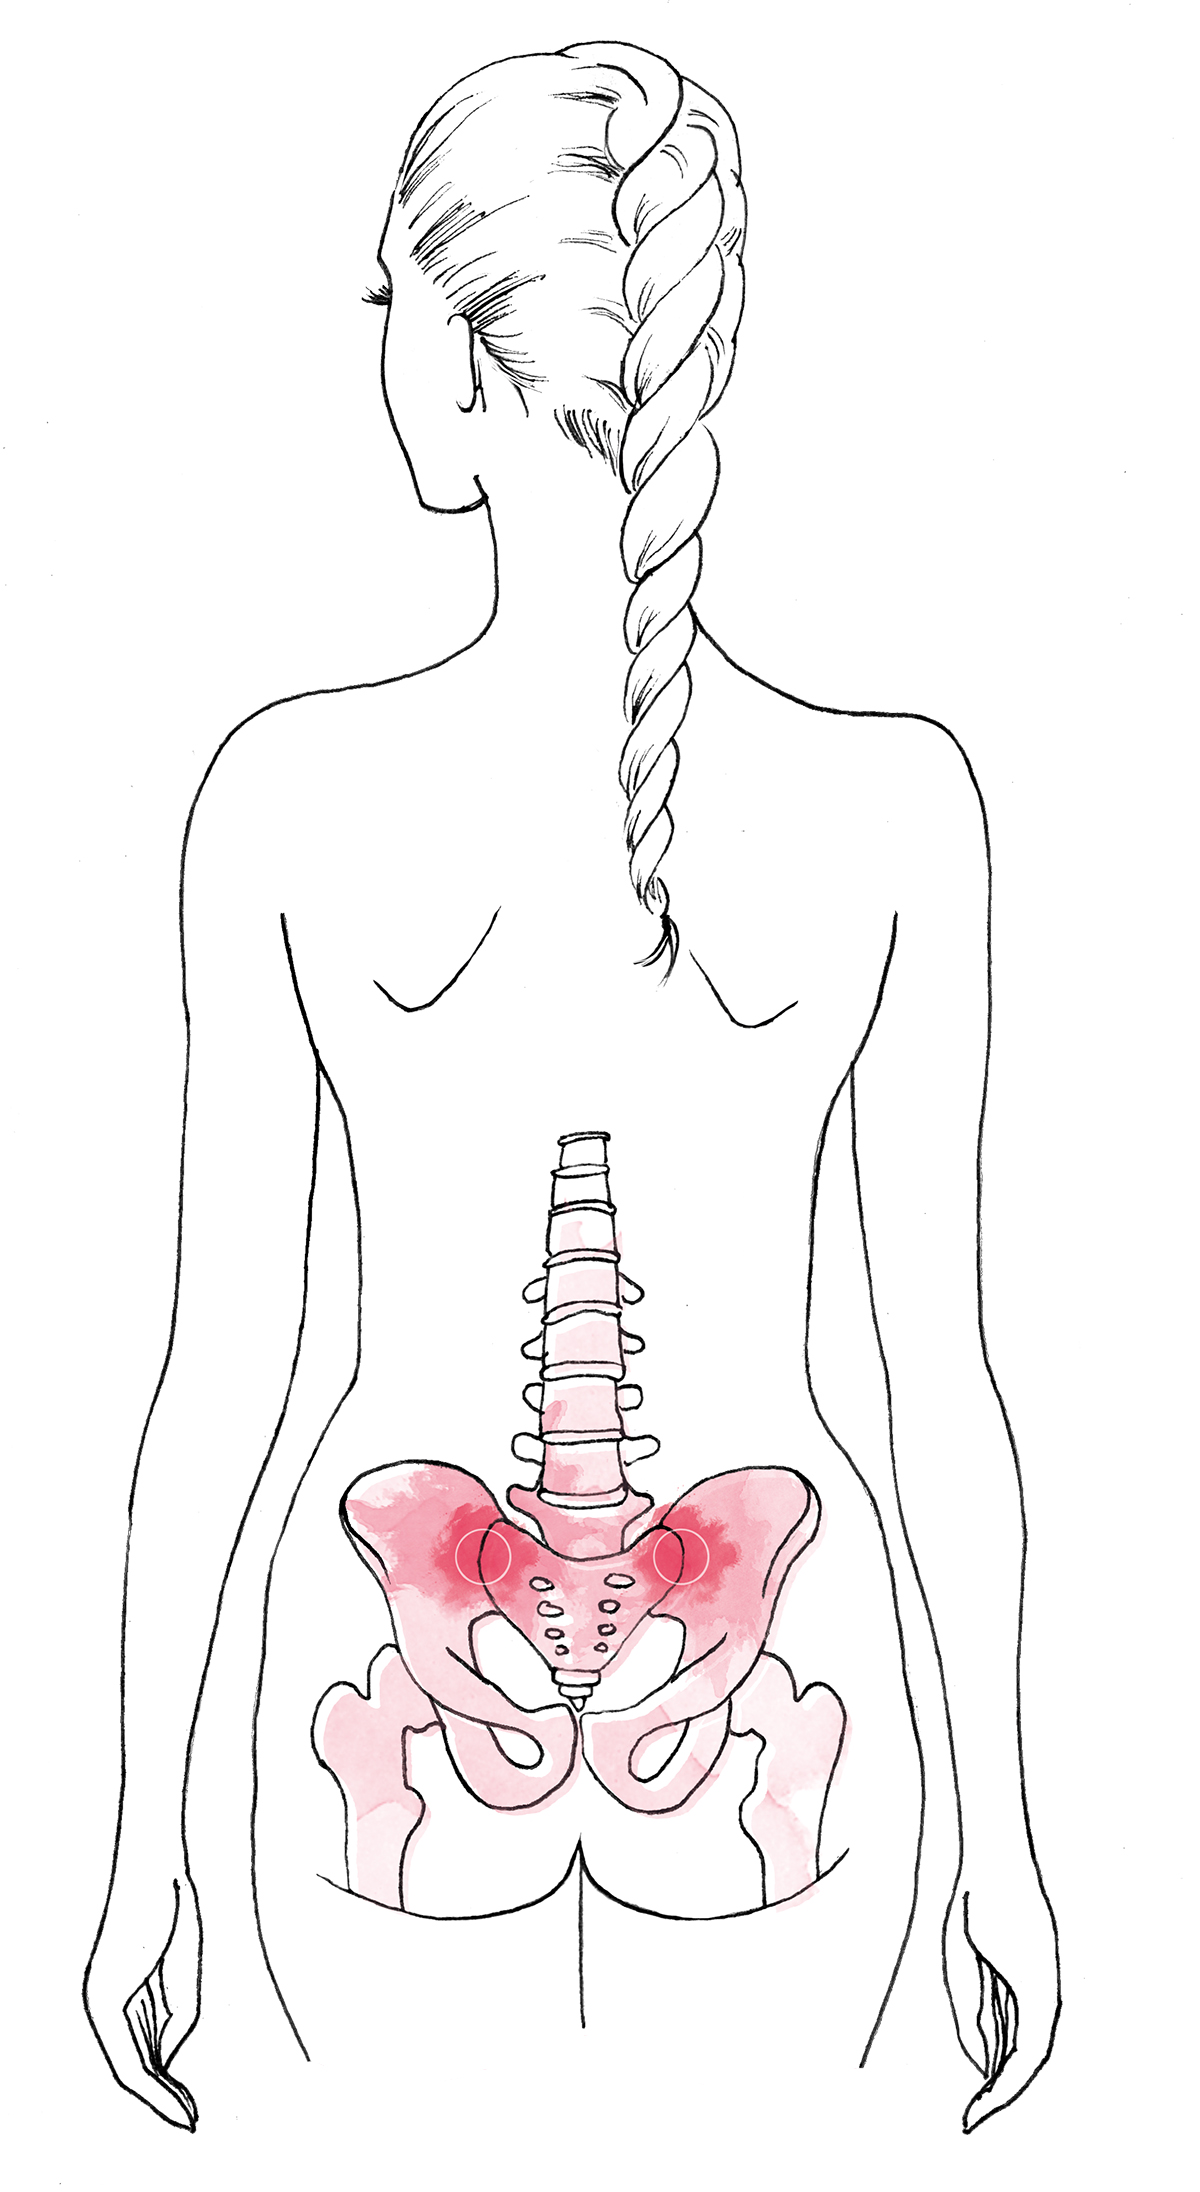 Duwen diepgaand systeem Oefeningen tegen pijn aan je rug en bekken (si-gewrichten) ⋆ Yoga Online